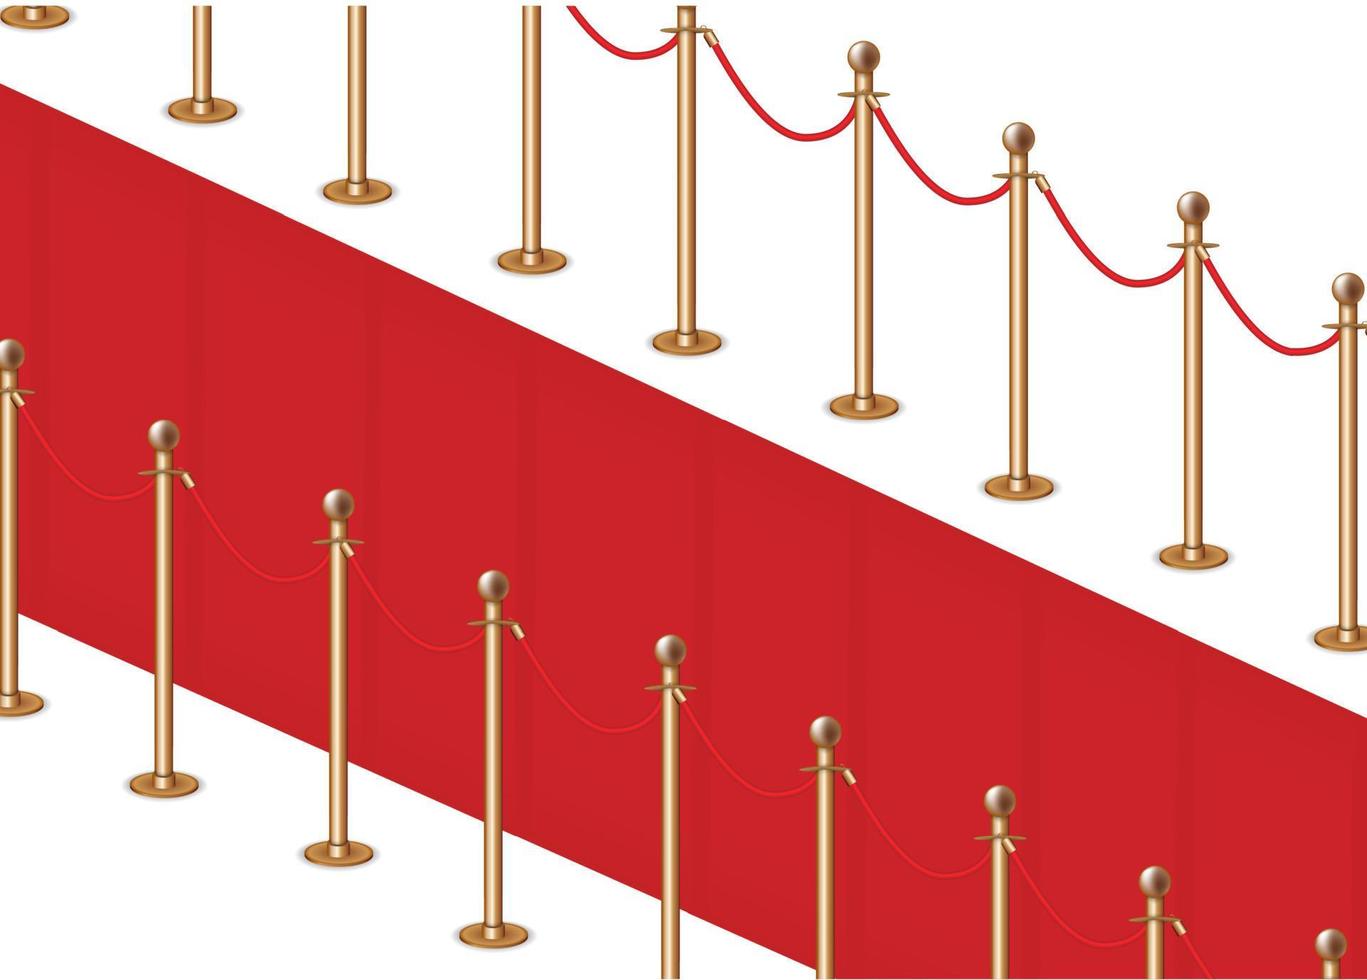 Barreras doradas realistas para esgrima al ingresar a una fiesta, club, evento. ilustración vectorial vector